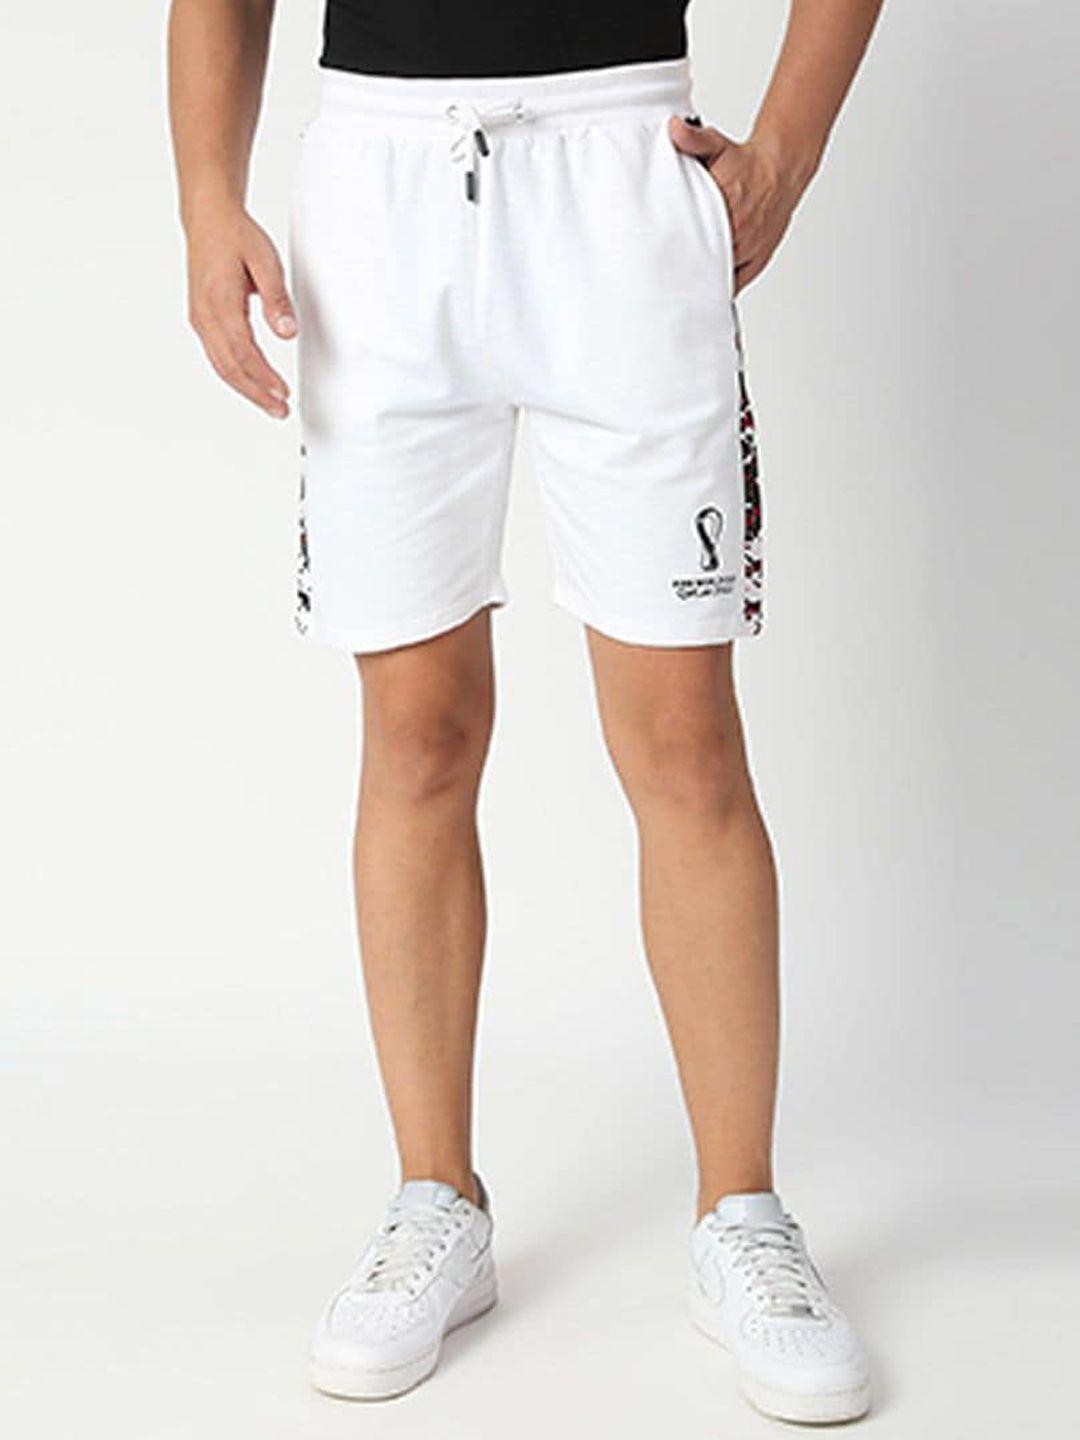 fancode men white printed shorts